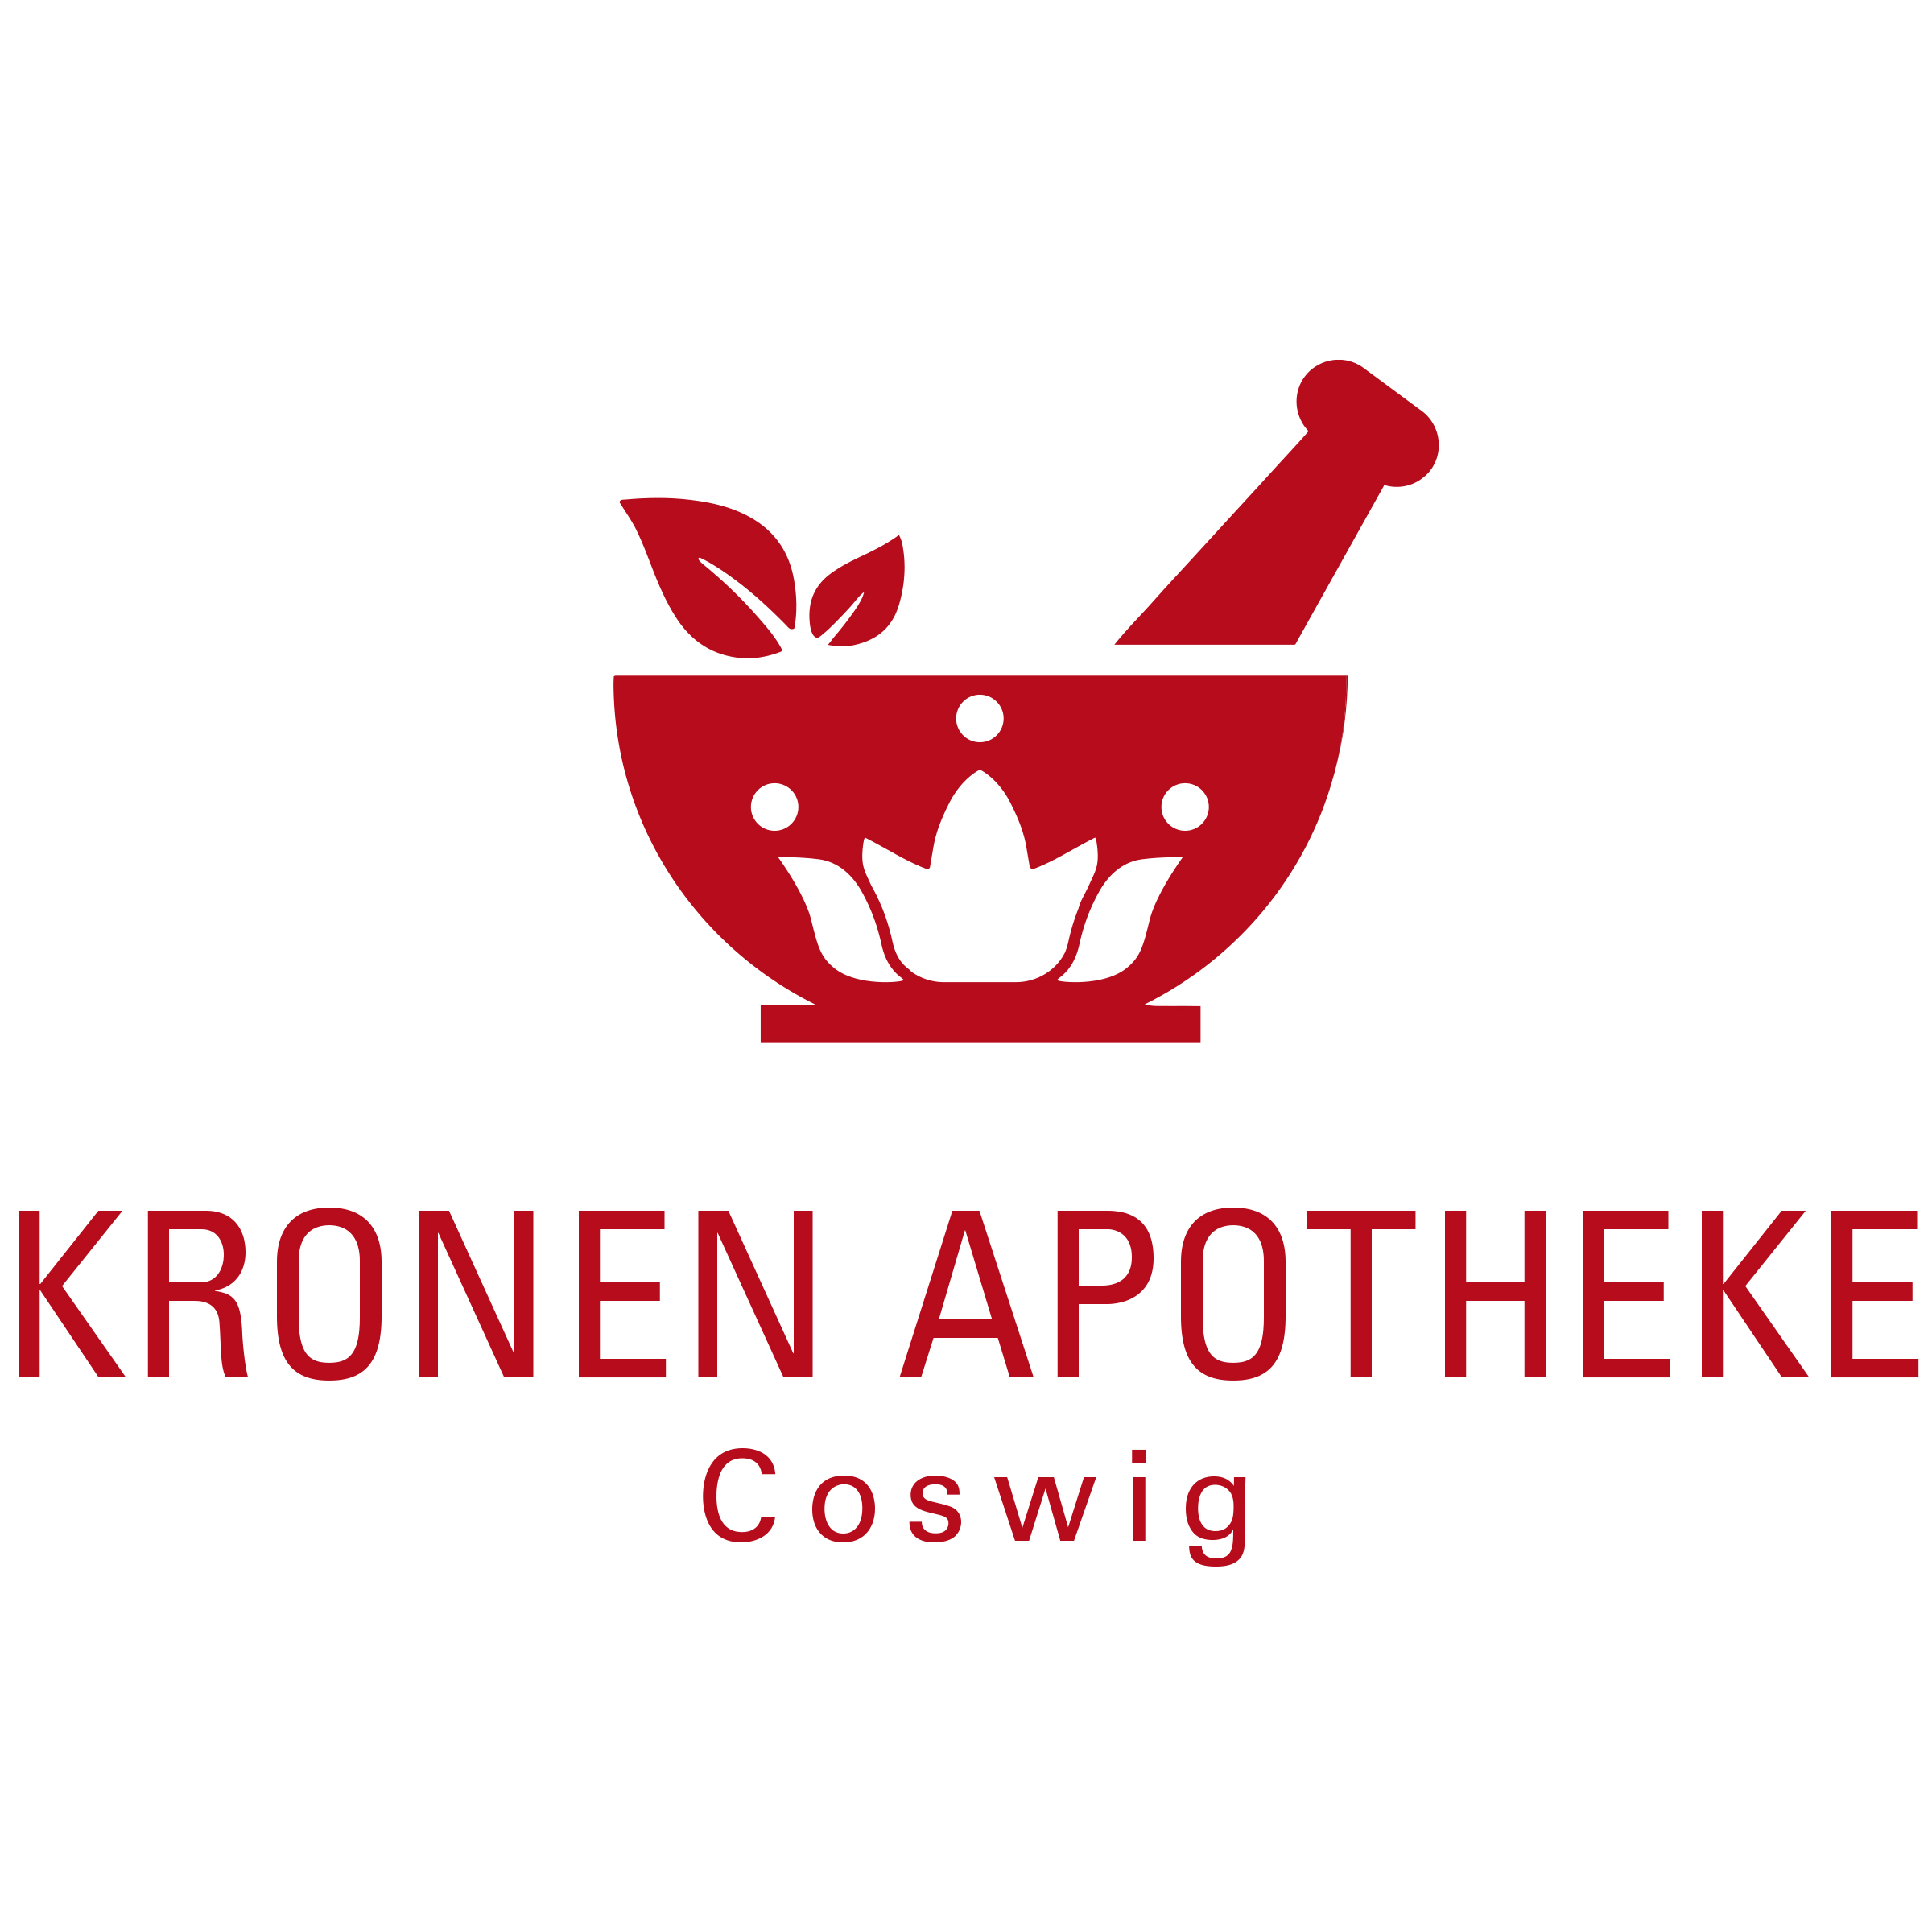 Kronen Apotheke in Coswig bei Dresden - Logo